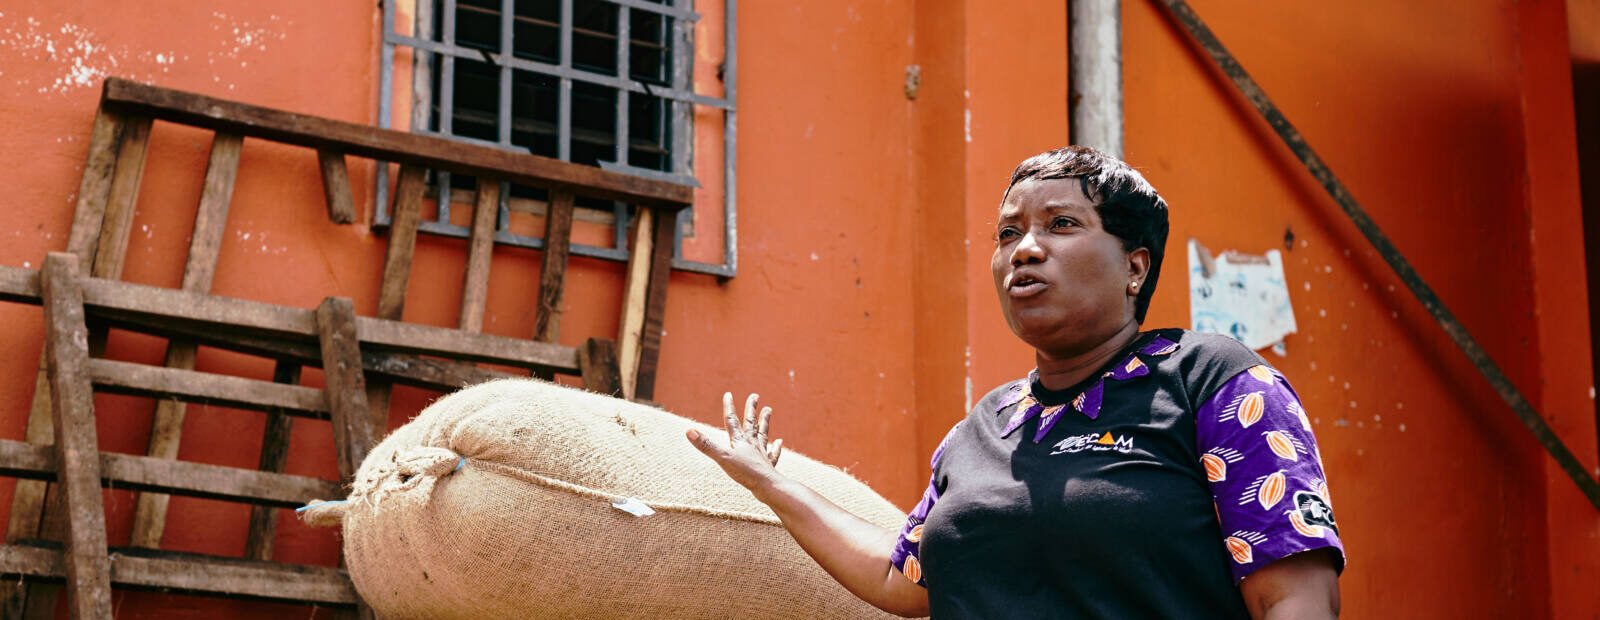 Doumbia Assata Kone steht vor Säcken mit Kakaobohnen.